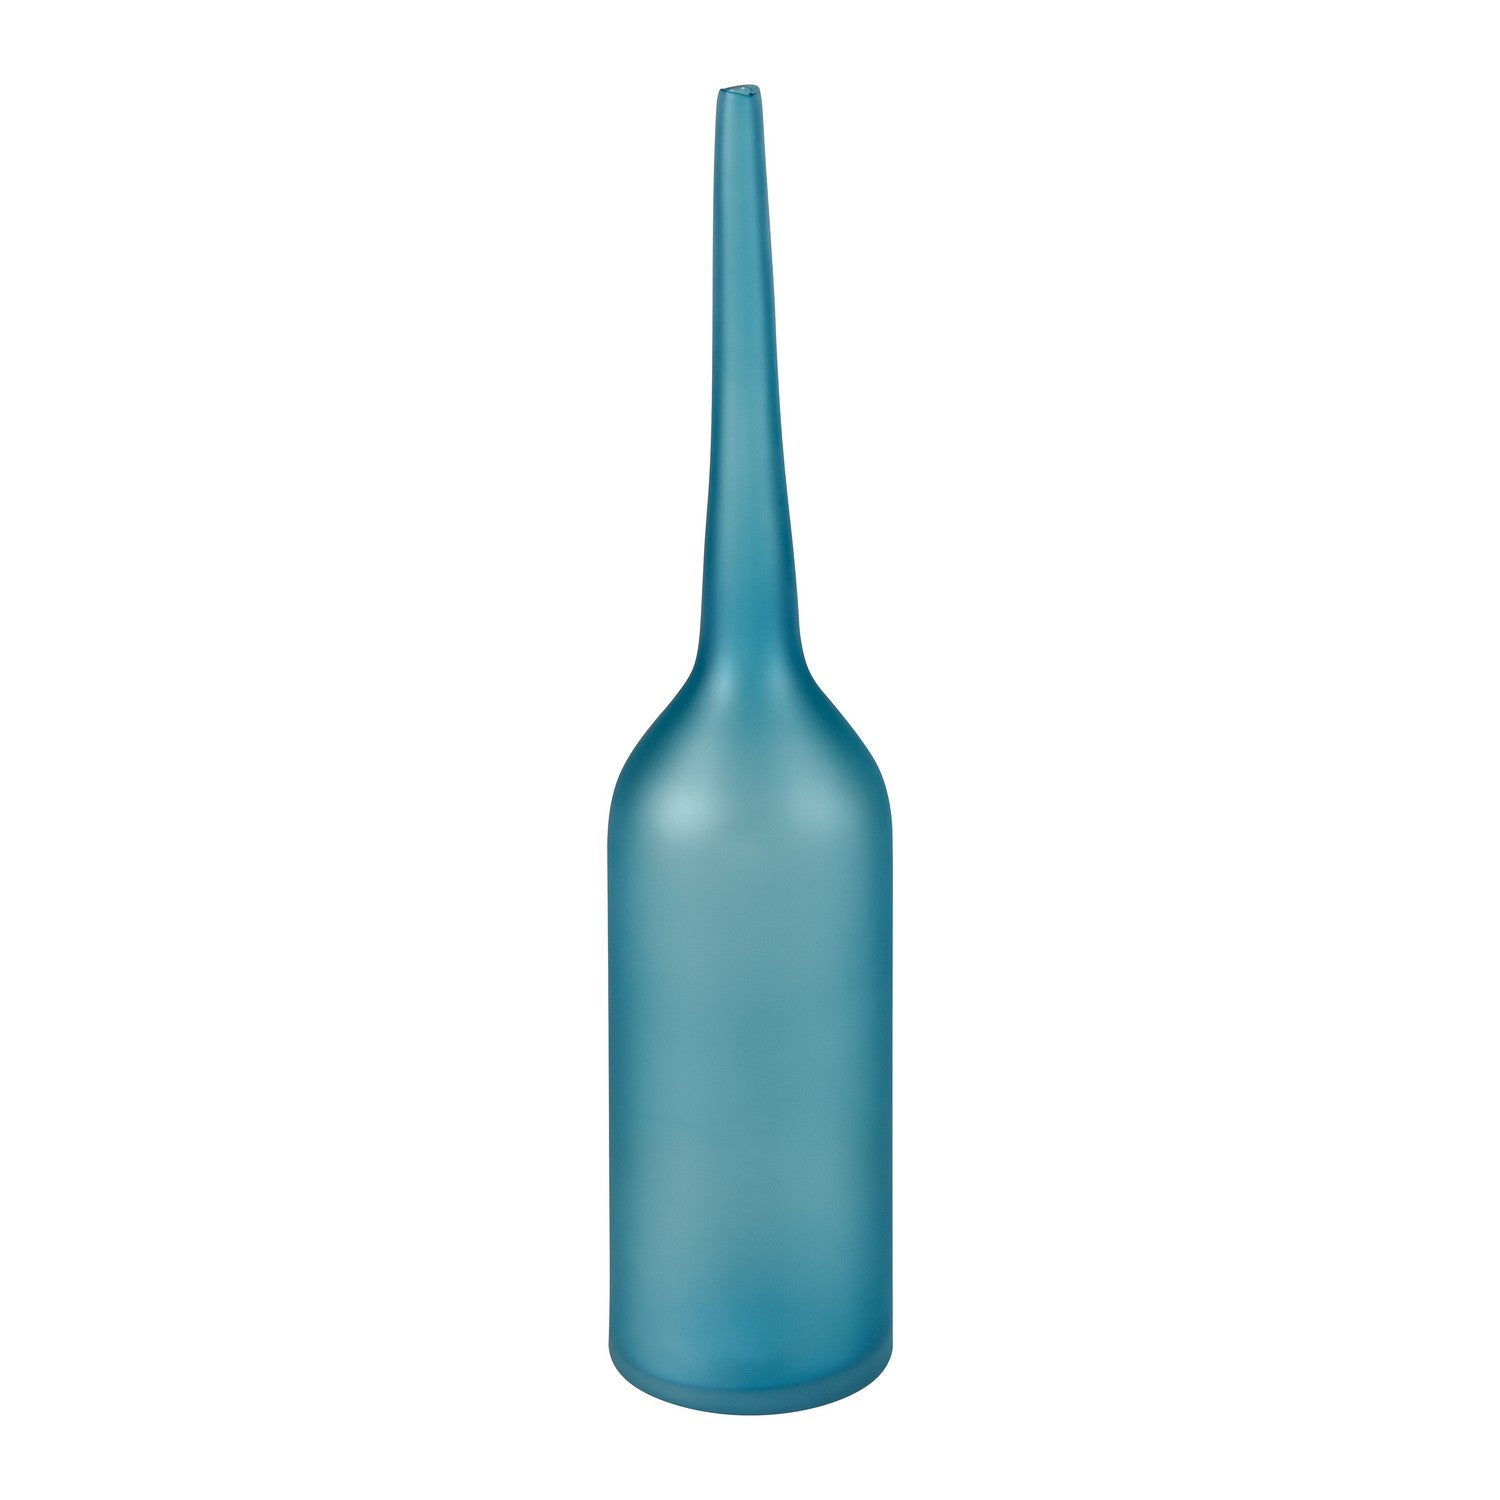 ELK Home - S0047-11326 - Bottle - Moffat - Blue